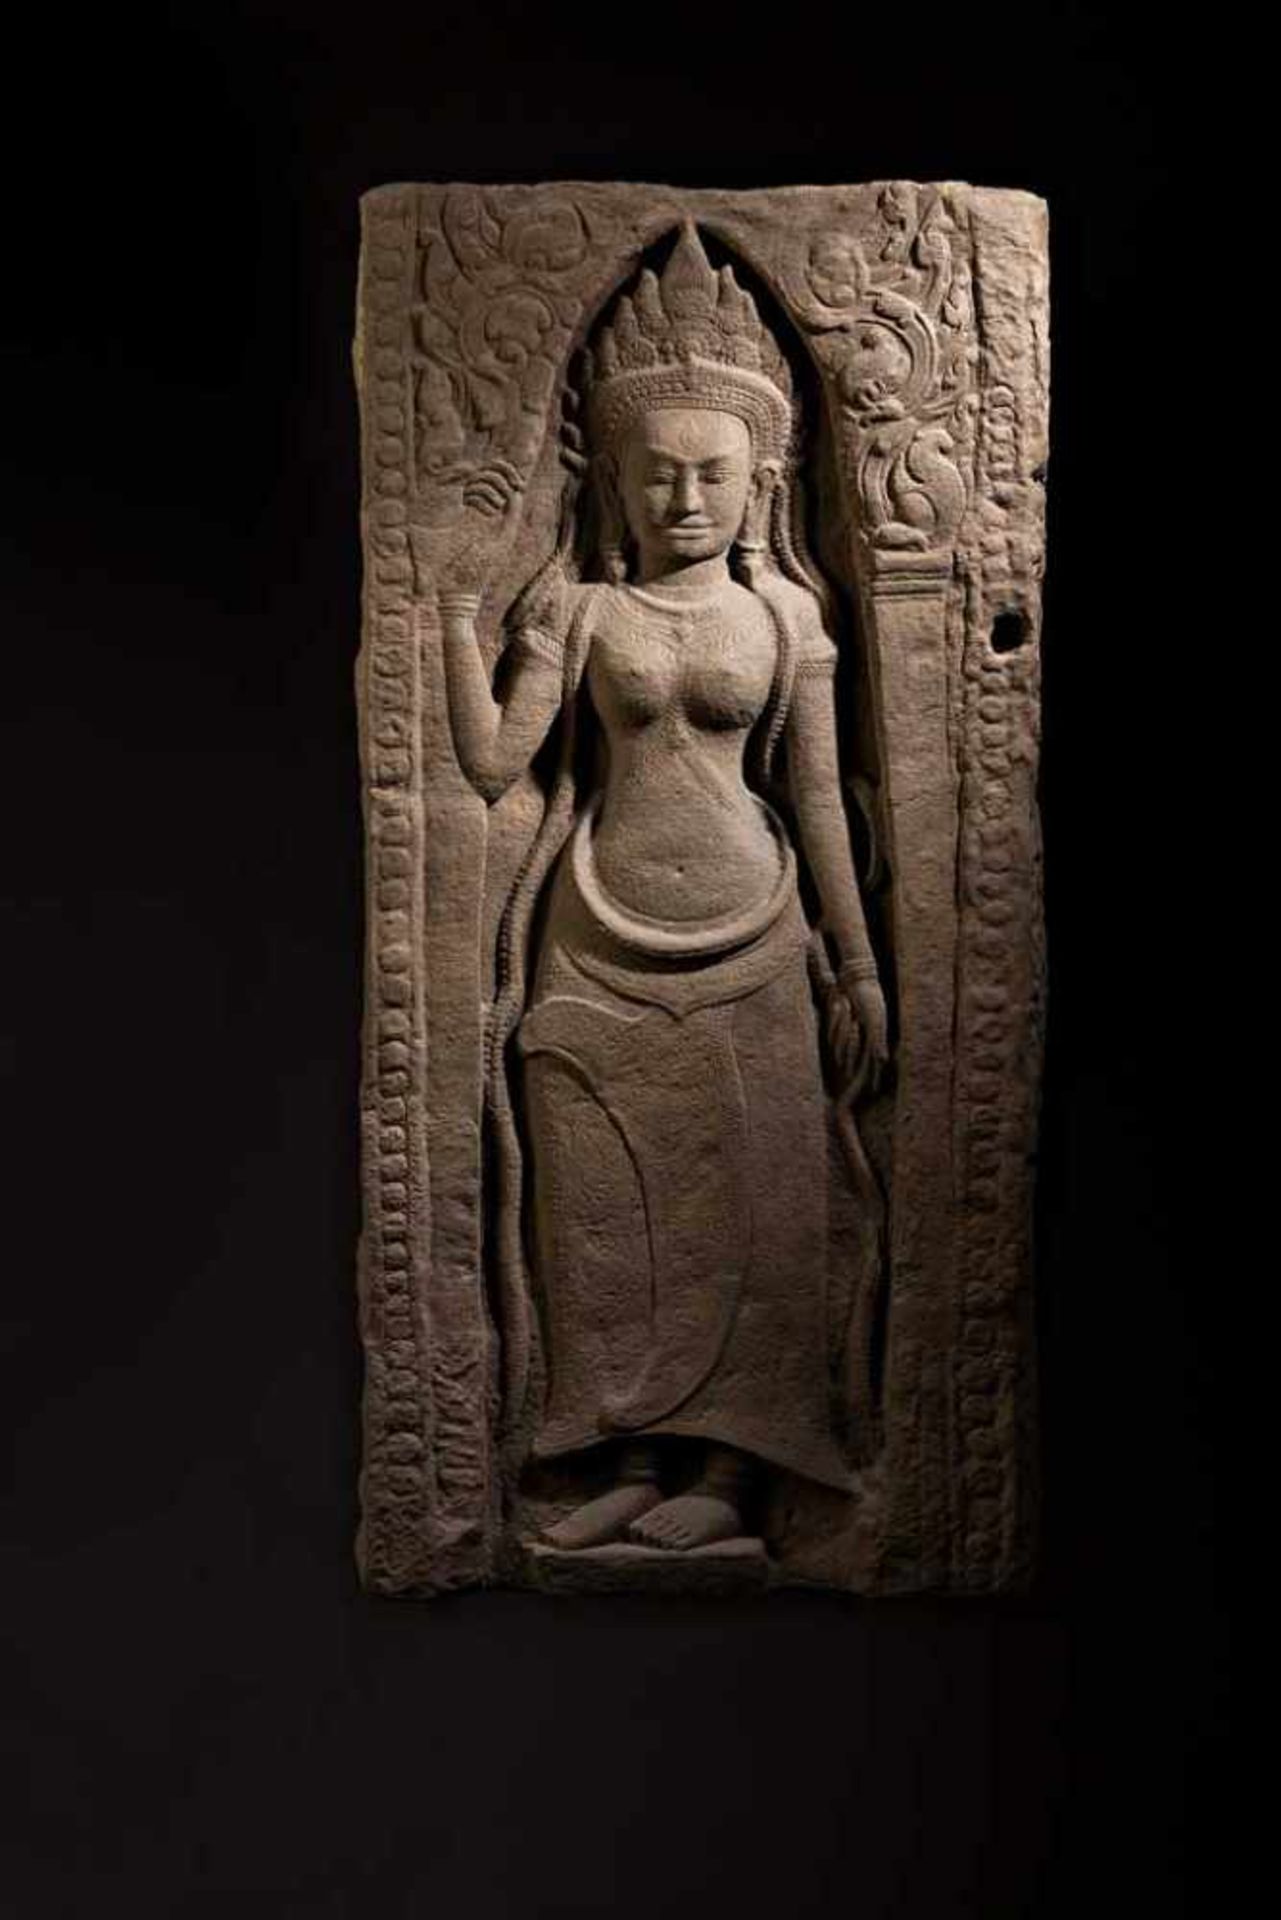 Devata als Bas-Relief. In Wandnische mit Spitzbogenabschluss stehende göttliche Tänzerin. Kunstvolle